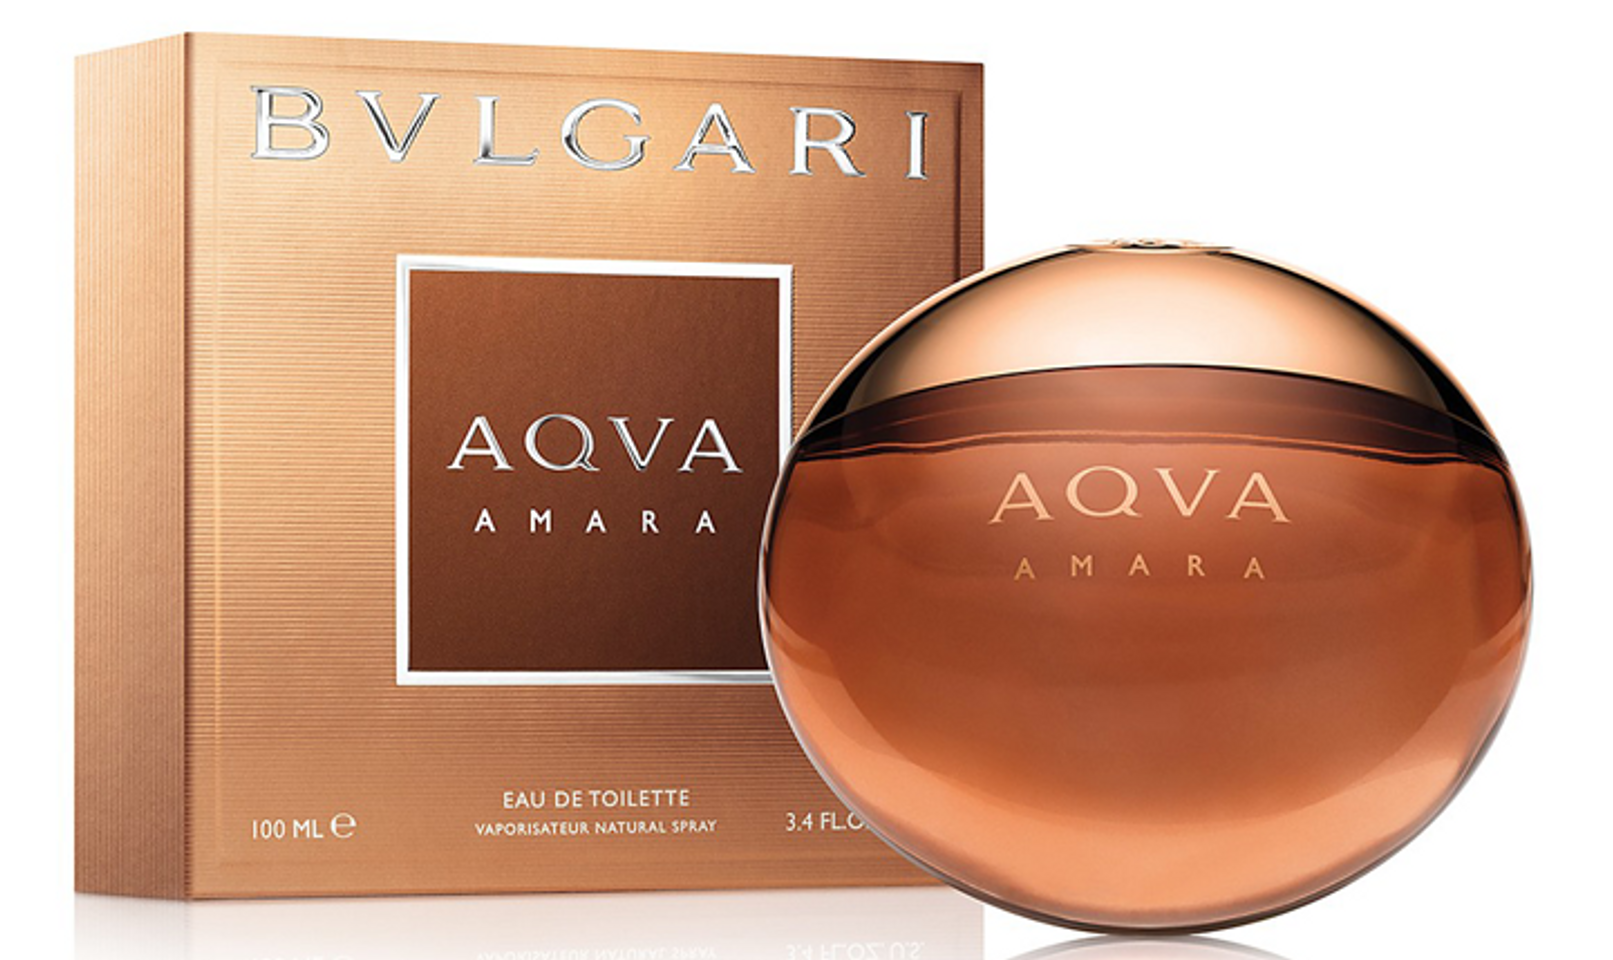 Nước hoa Bvlgari Aqva Amara chính là một “chiến binh mùi hương” mới của dòng nước hoa nam tính Bvlgari Aqva